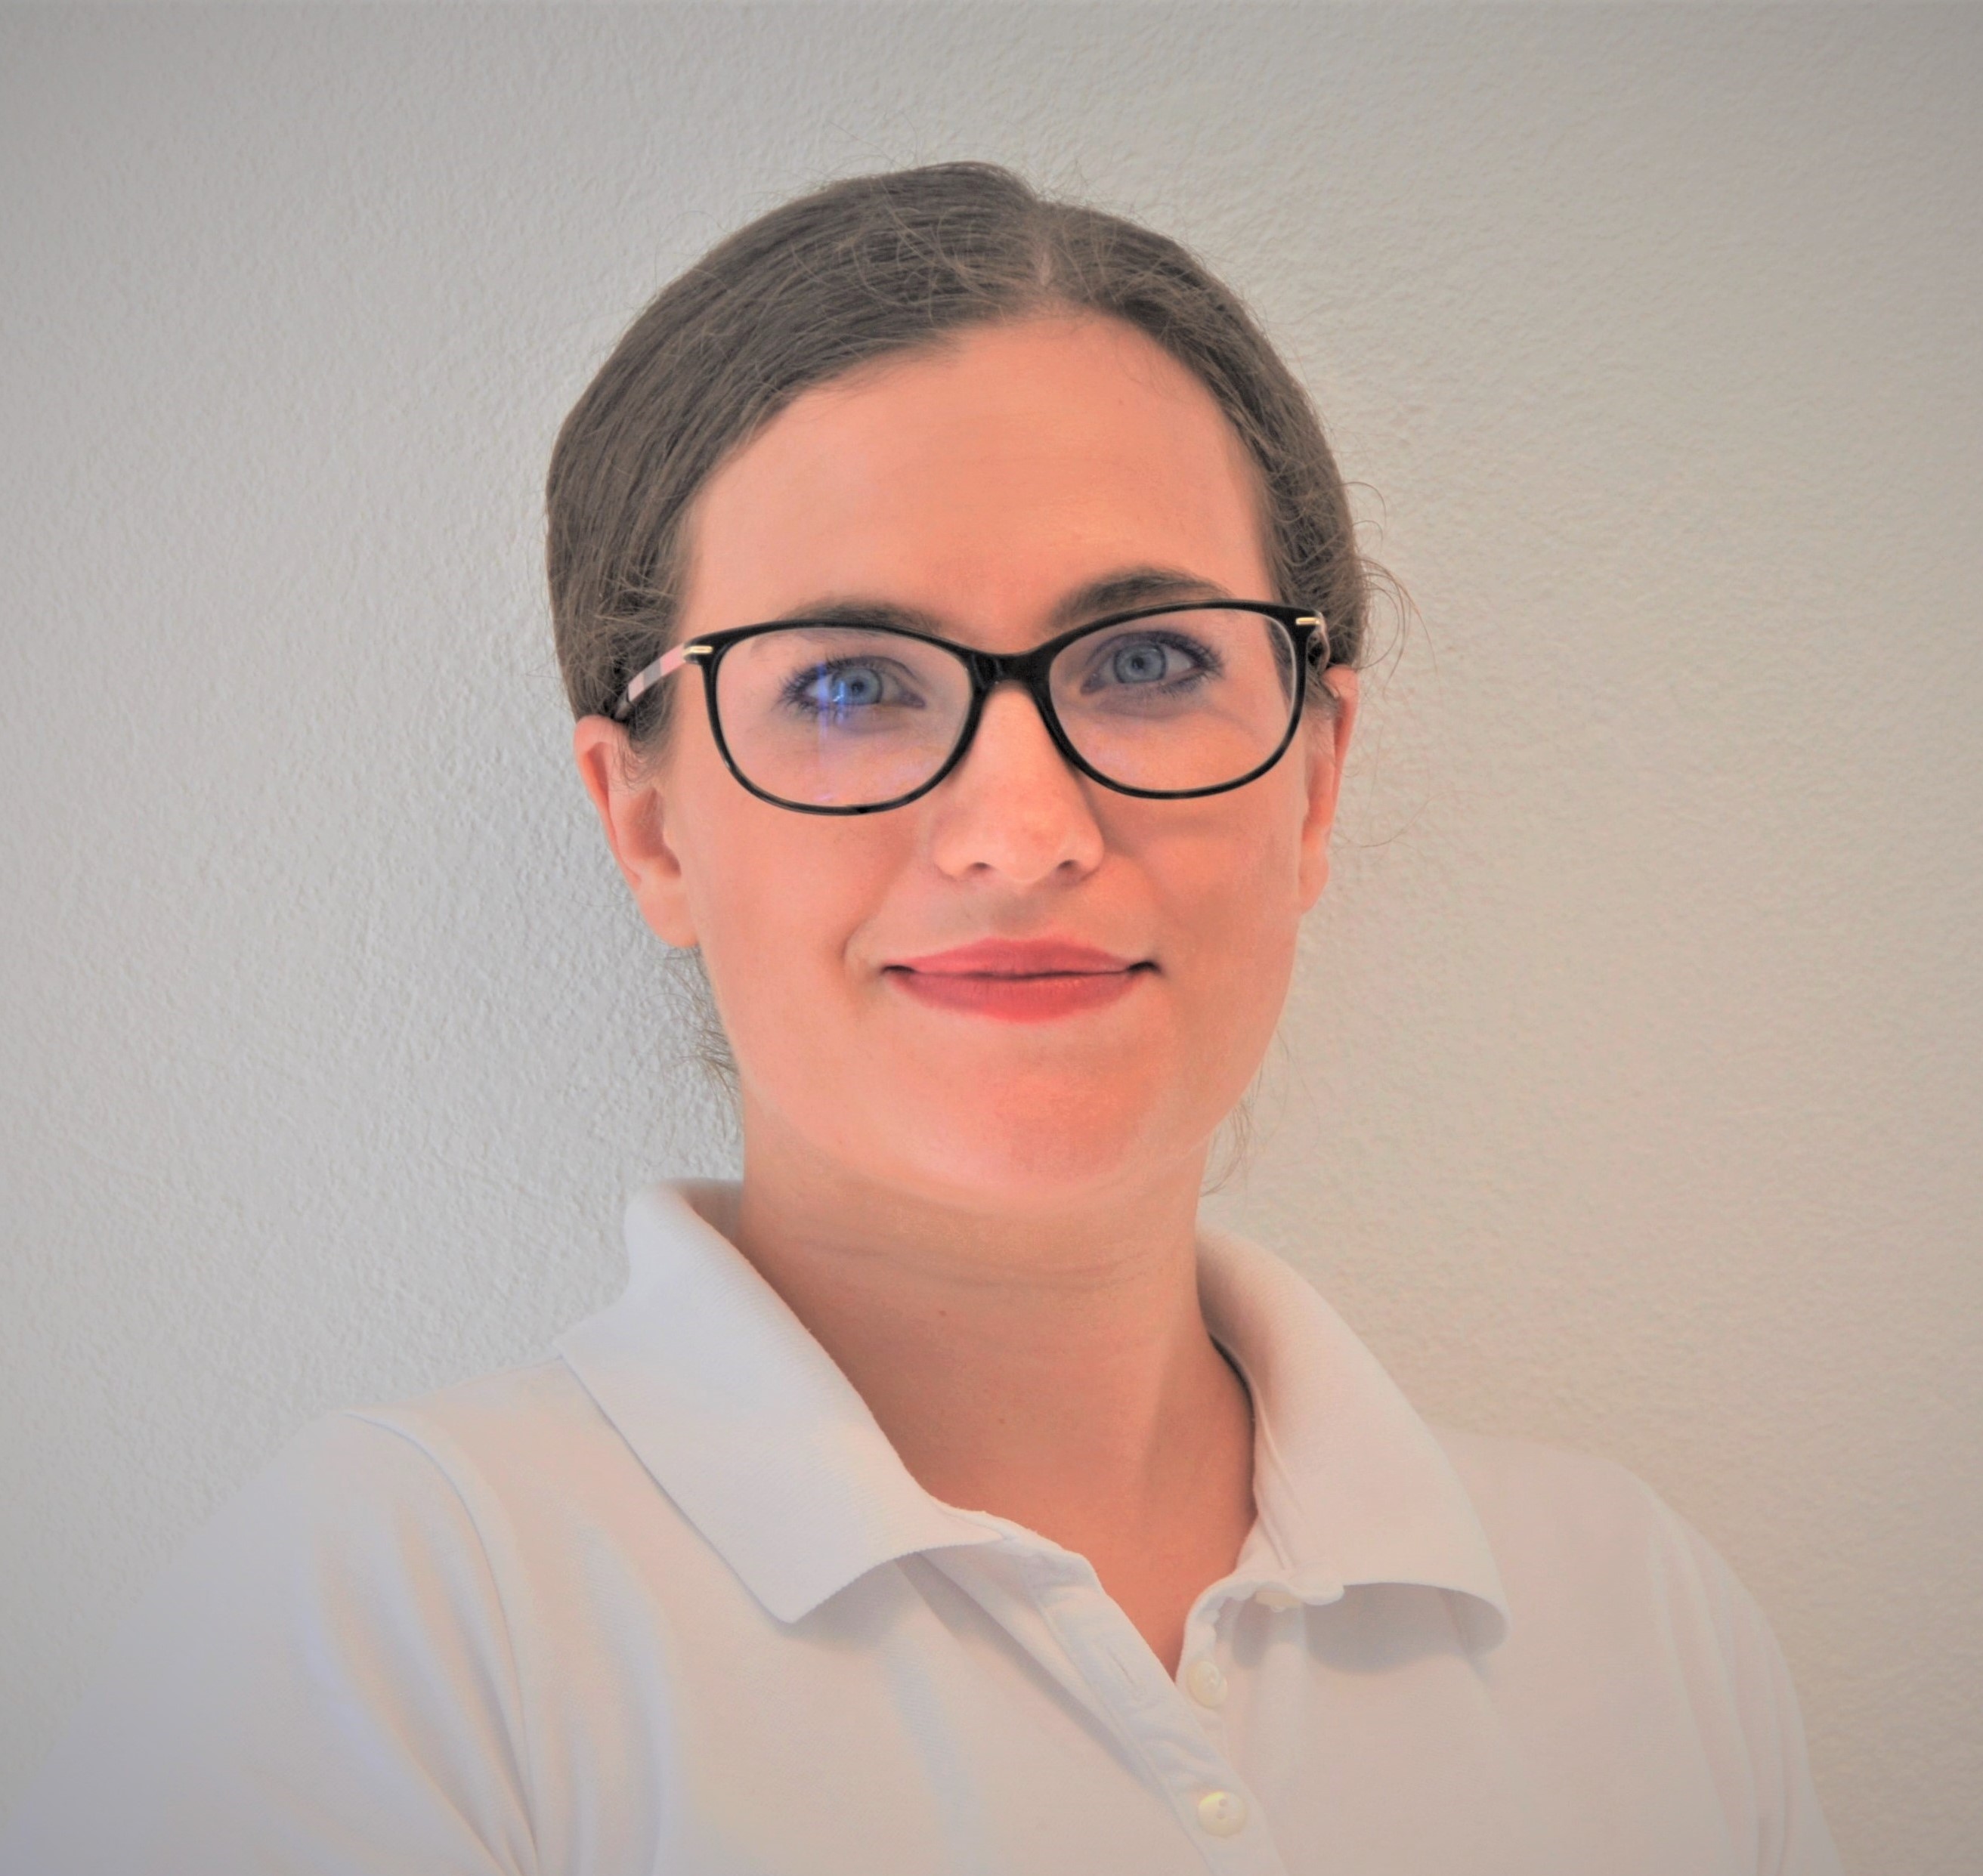 Praxisteam | Frauenarzt Zürich | Dr. Eichler